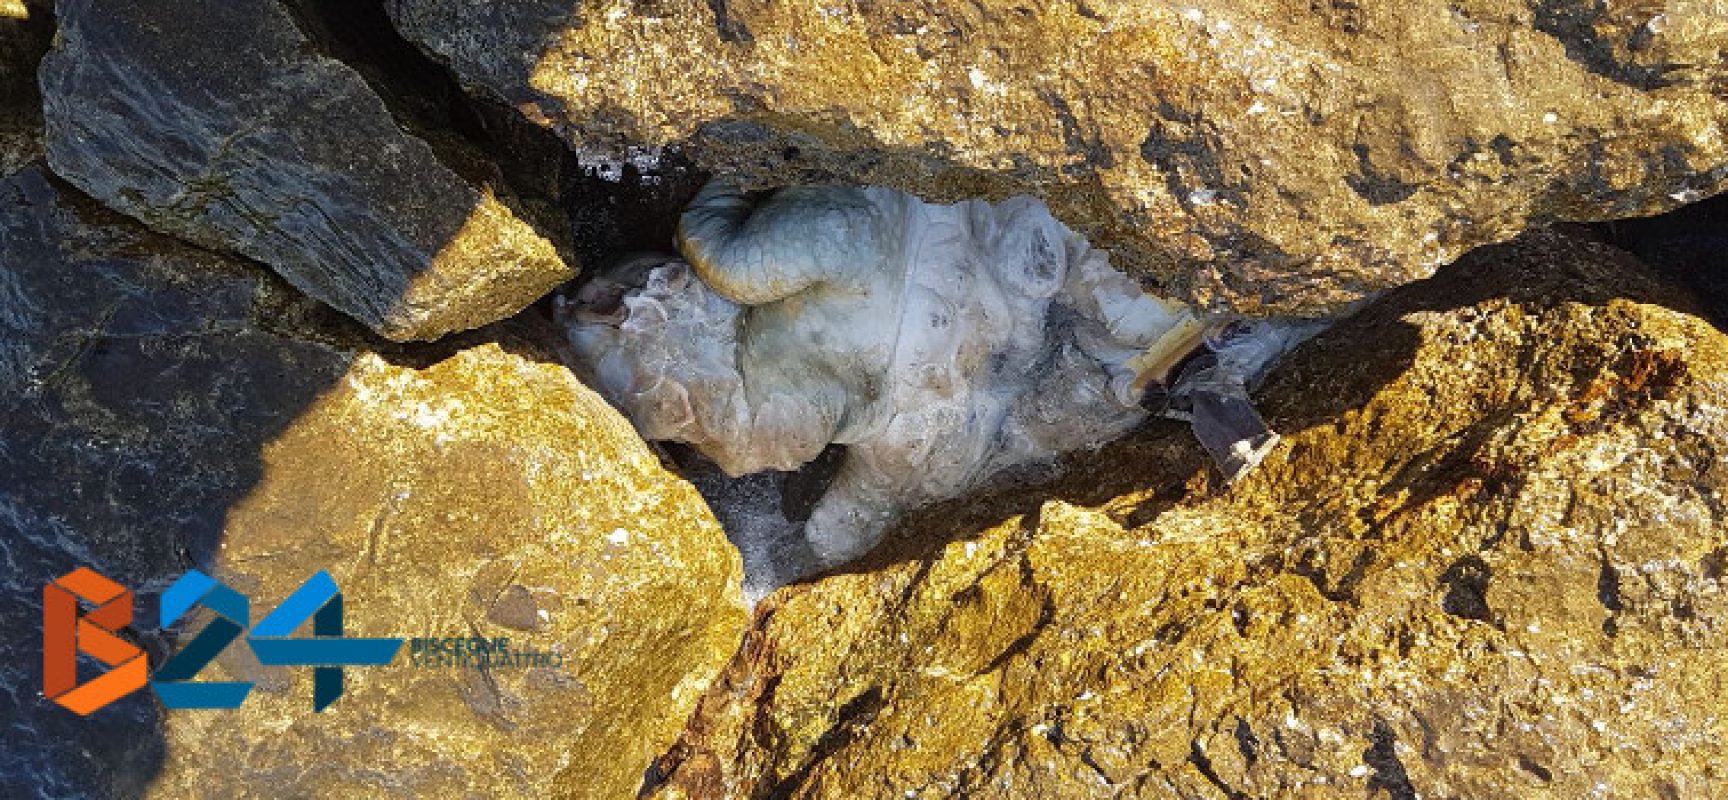 Carcassa di tartaruga marina ritrovata tra gli scogli de “La Salata”